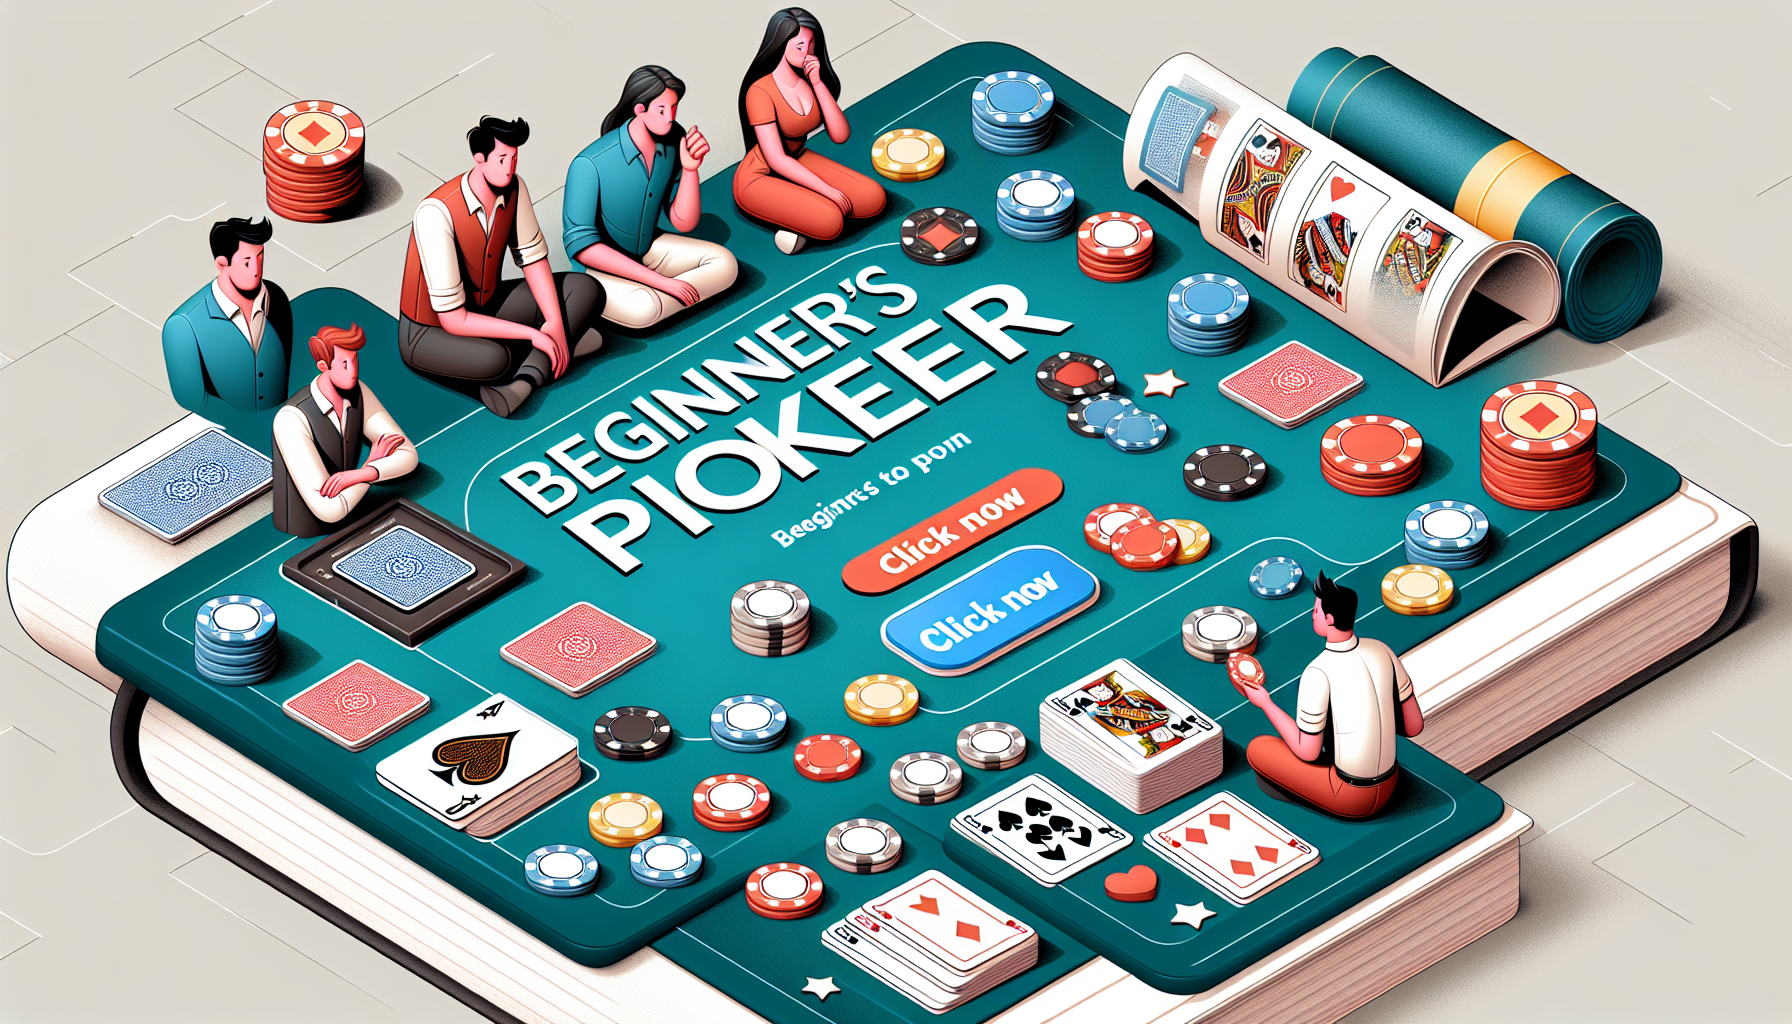 découvrez les règles de base du poker et apprenez à jouer à ce populaire jeu de cartes. comprendre les principes essentiels pour débuter une partie de poker.